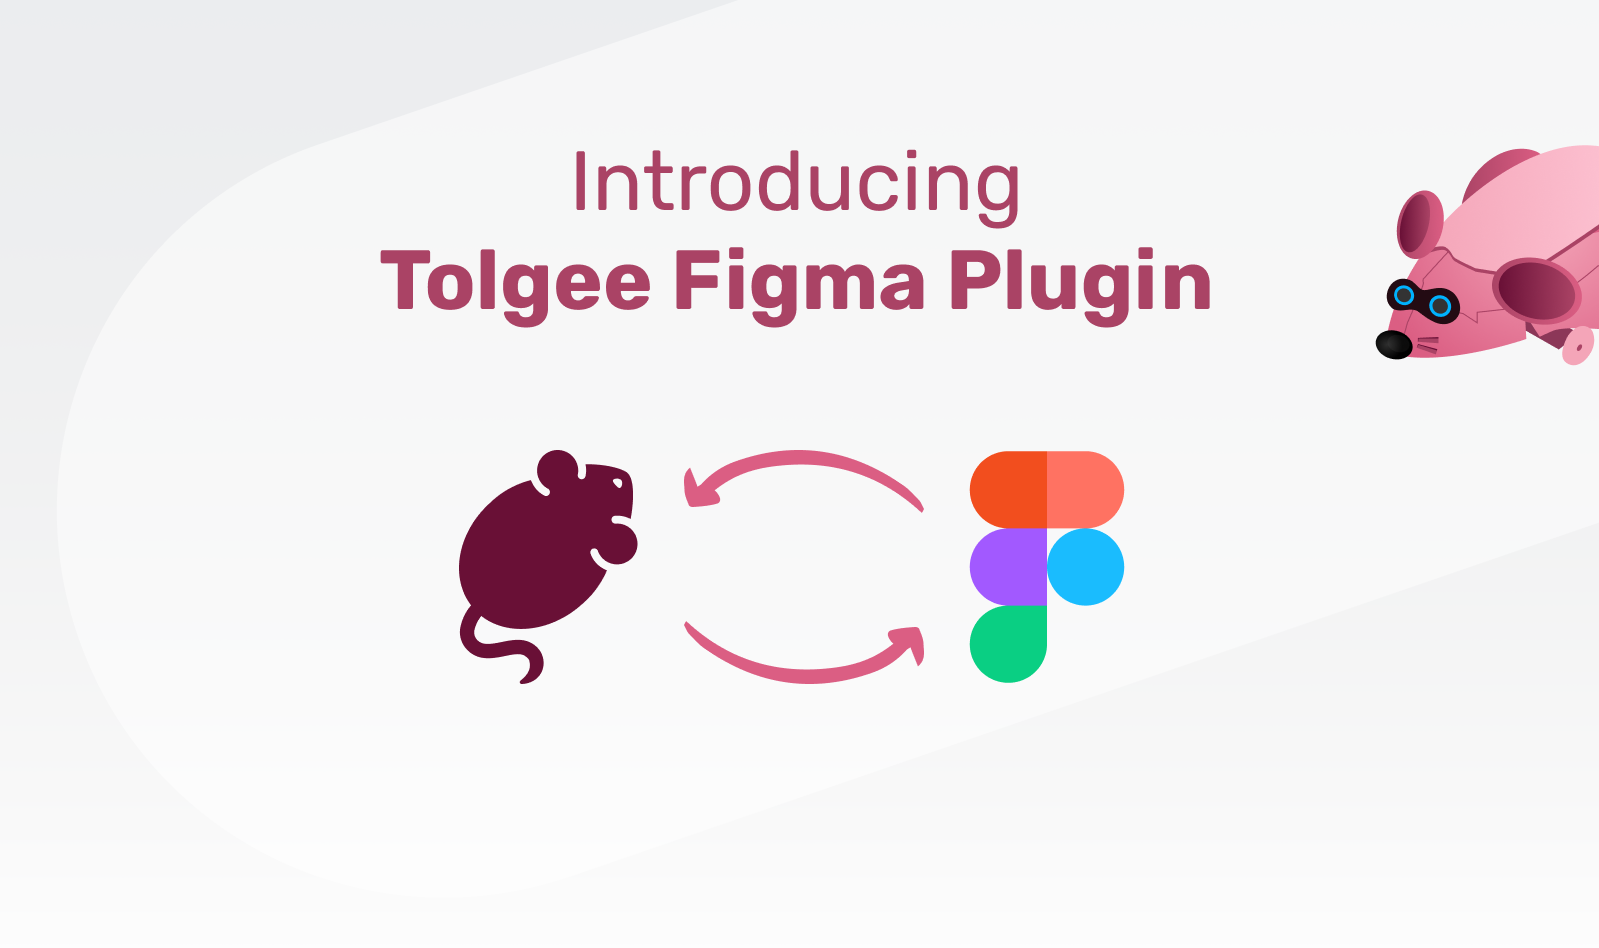 Tolgee’s Figma plugin